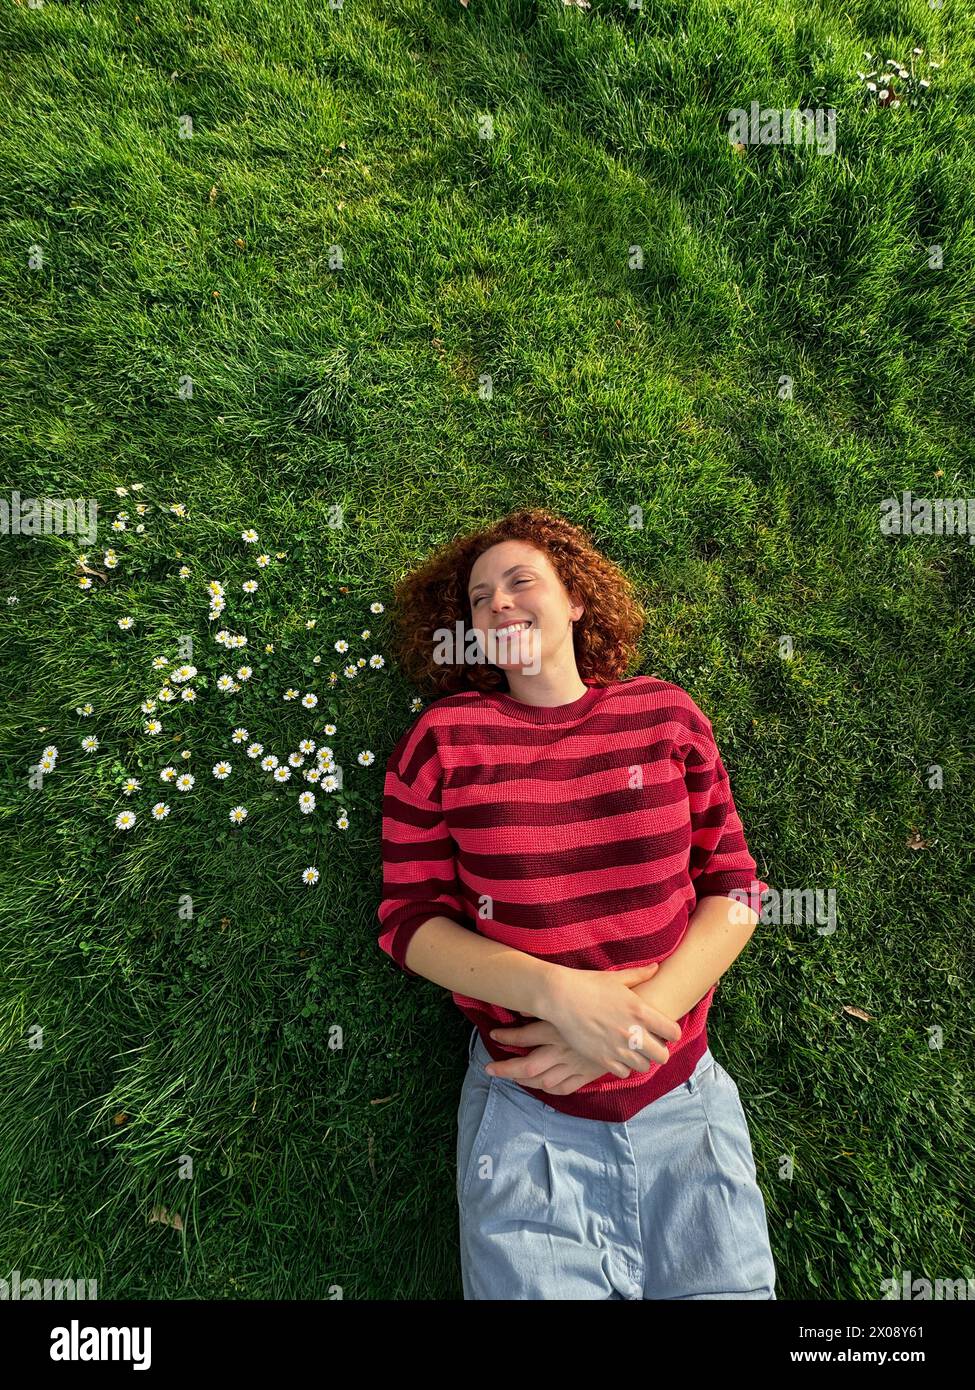 Una donna allegra rossa giace su un'erba verde brillante, il suo sorriso irradia gioia tra le piccole margherite bianche Foto Stock